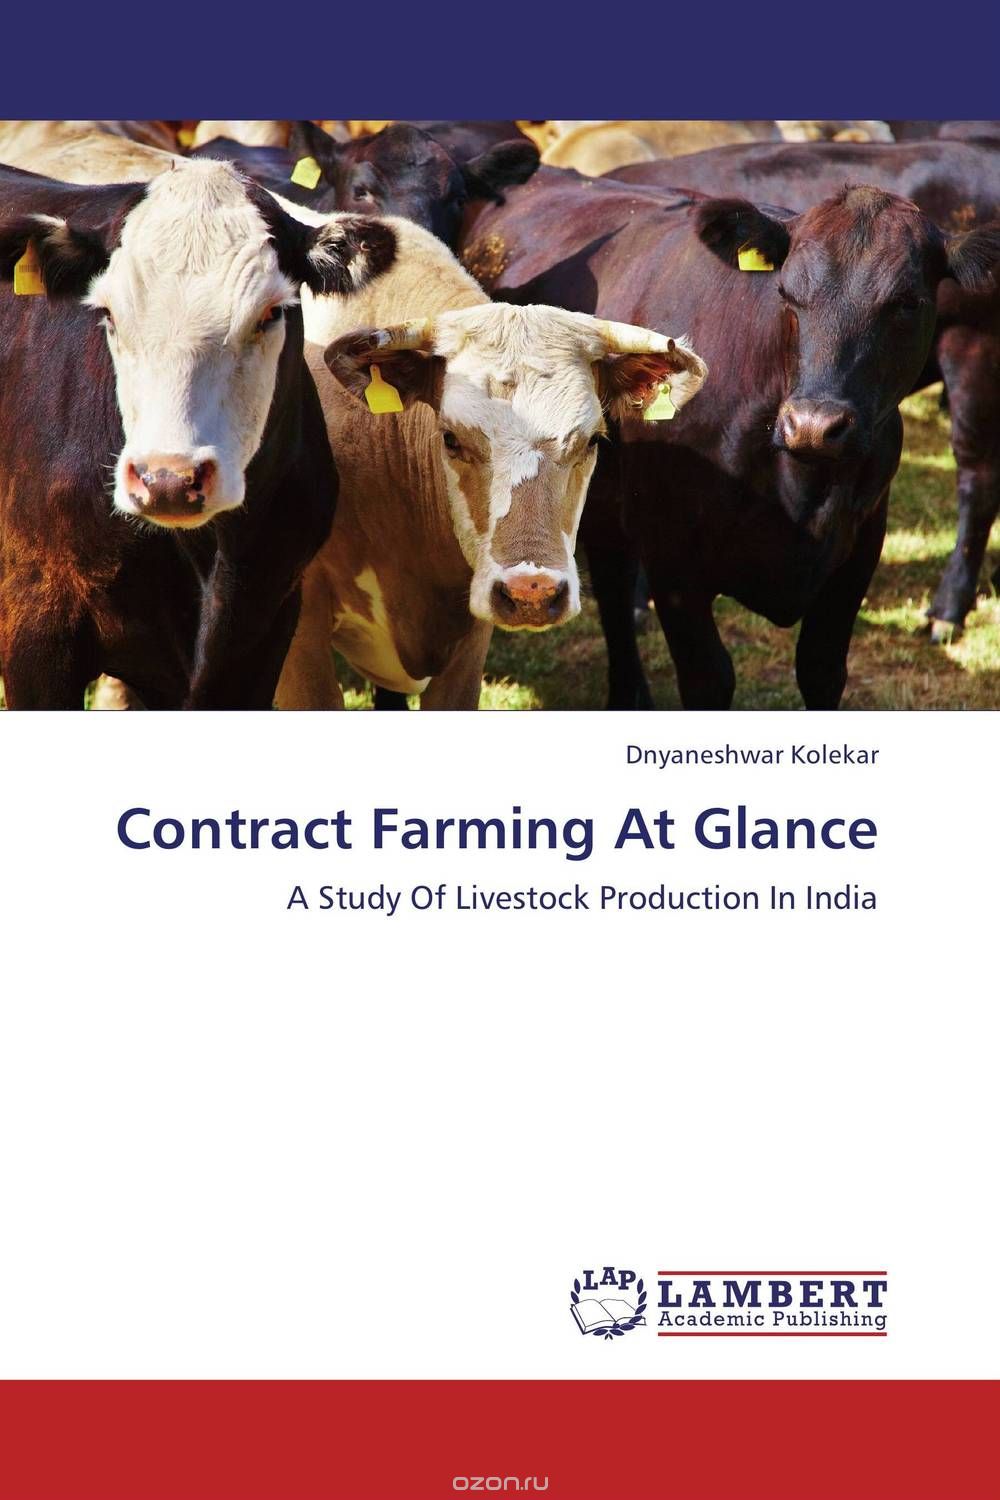 Скачать книгу "Contract Farming At Glance"